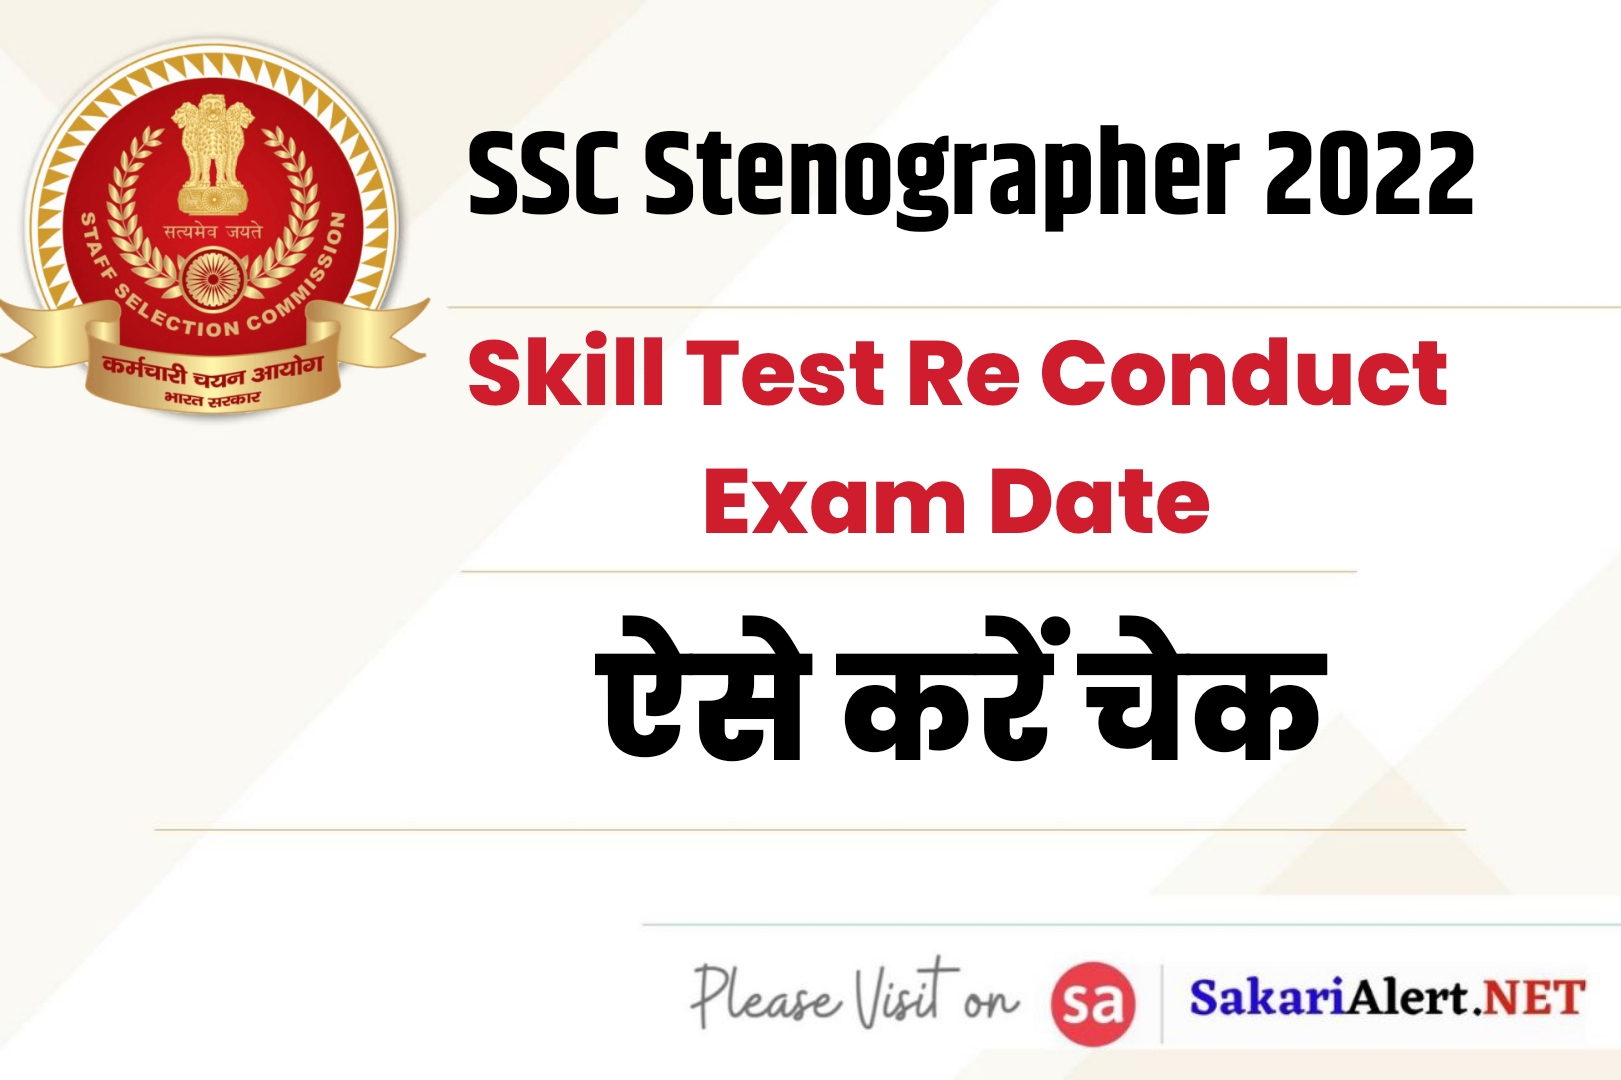 SSC Stenographer 2022 Skill Test Re Conduct Exam Date | एसएससी स्टेनोग्राफर परीक्षा तिथि